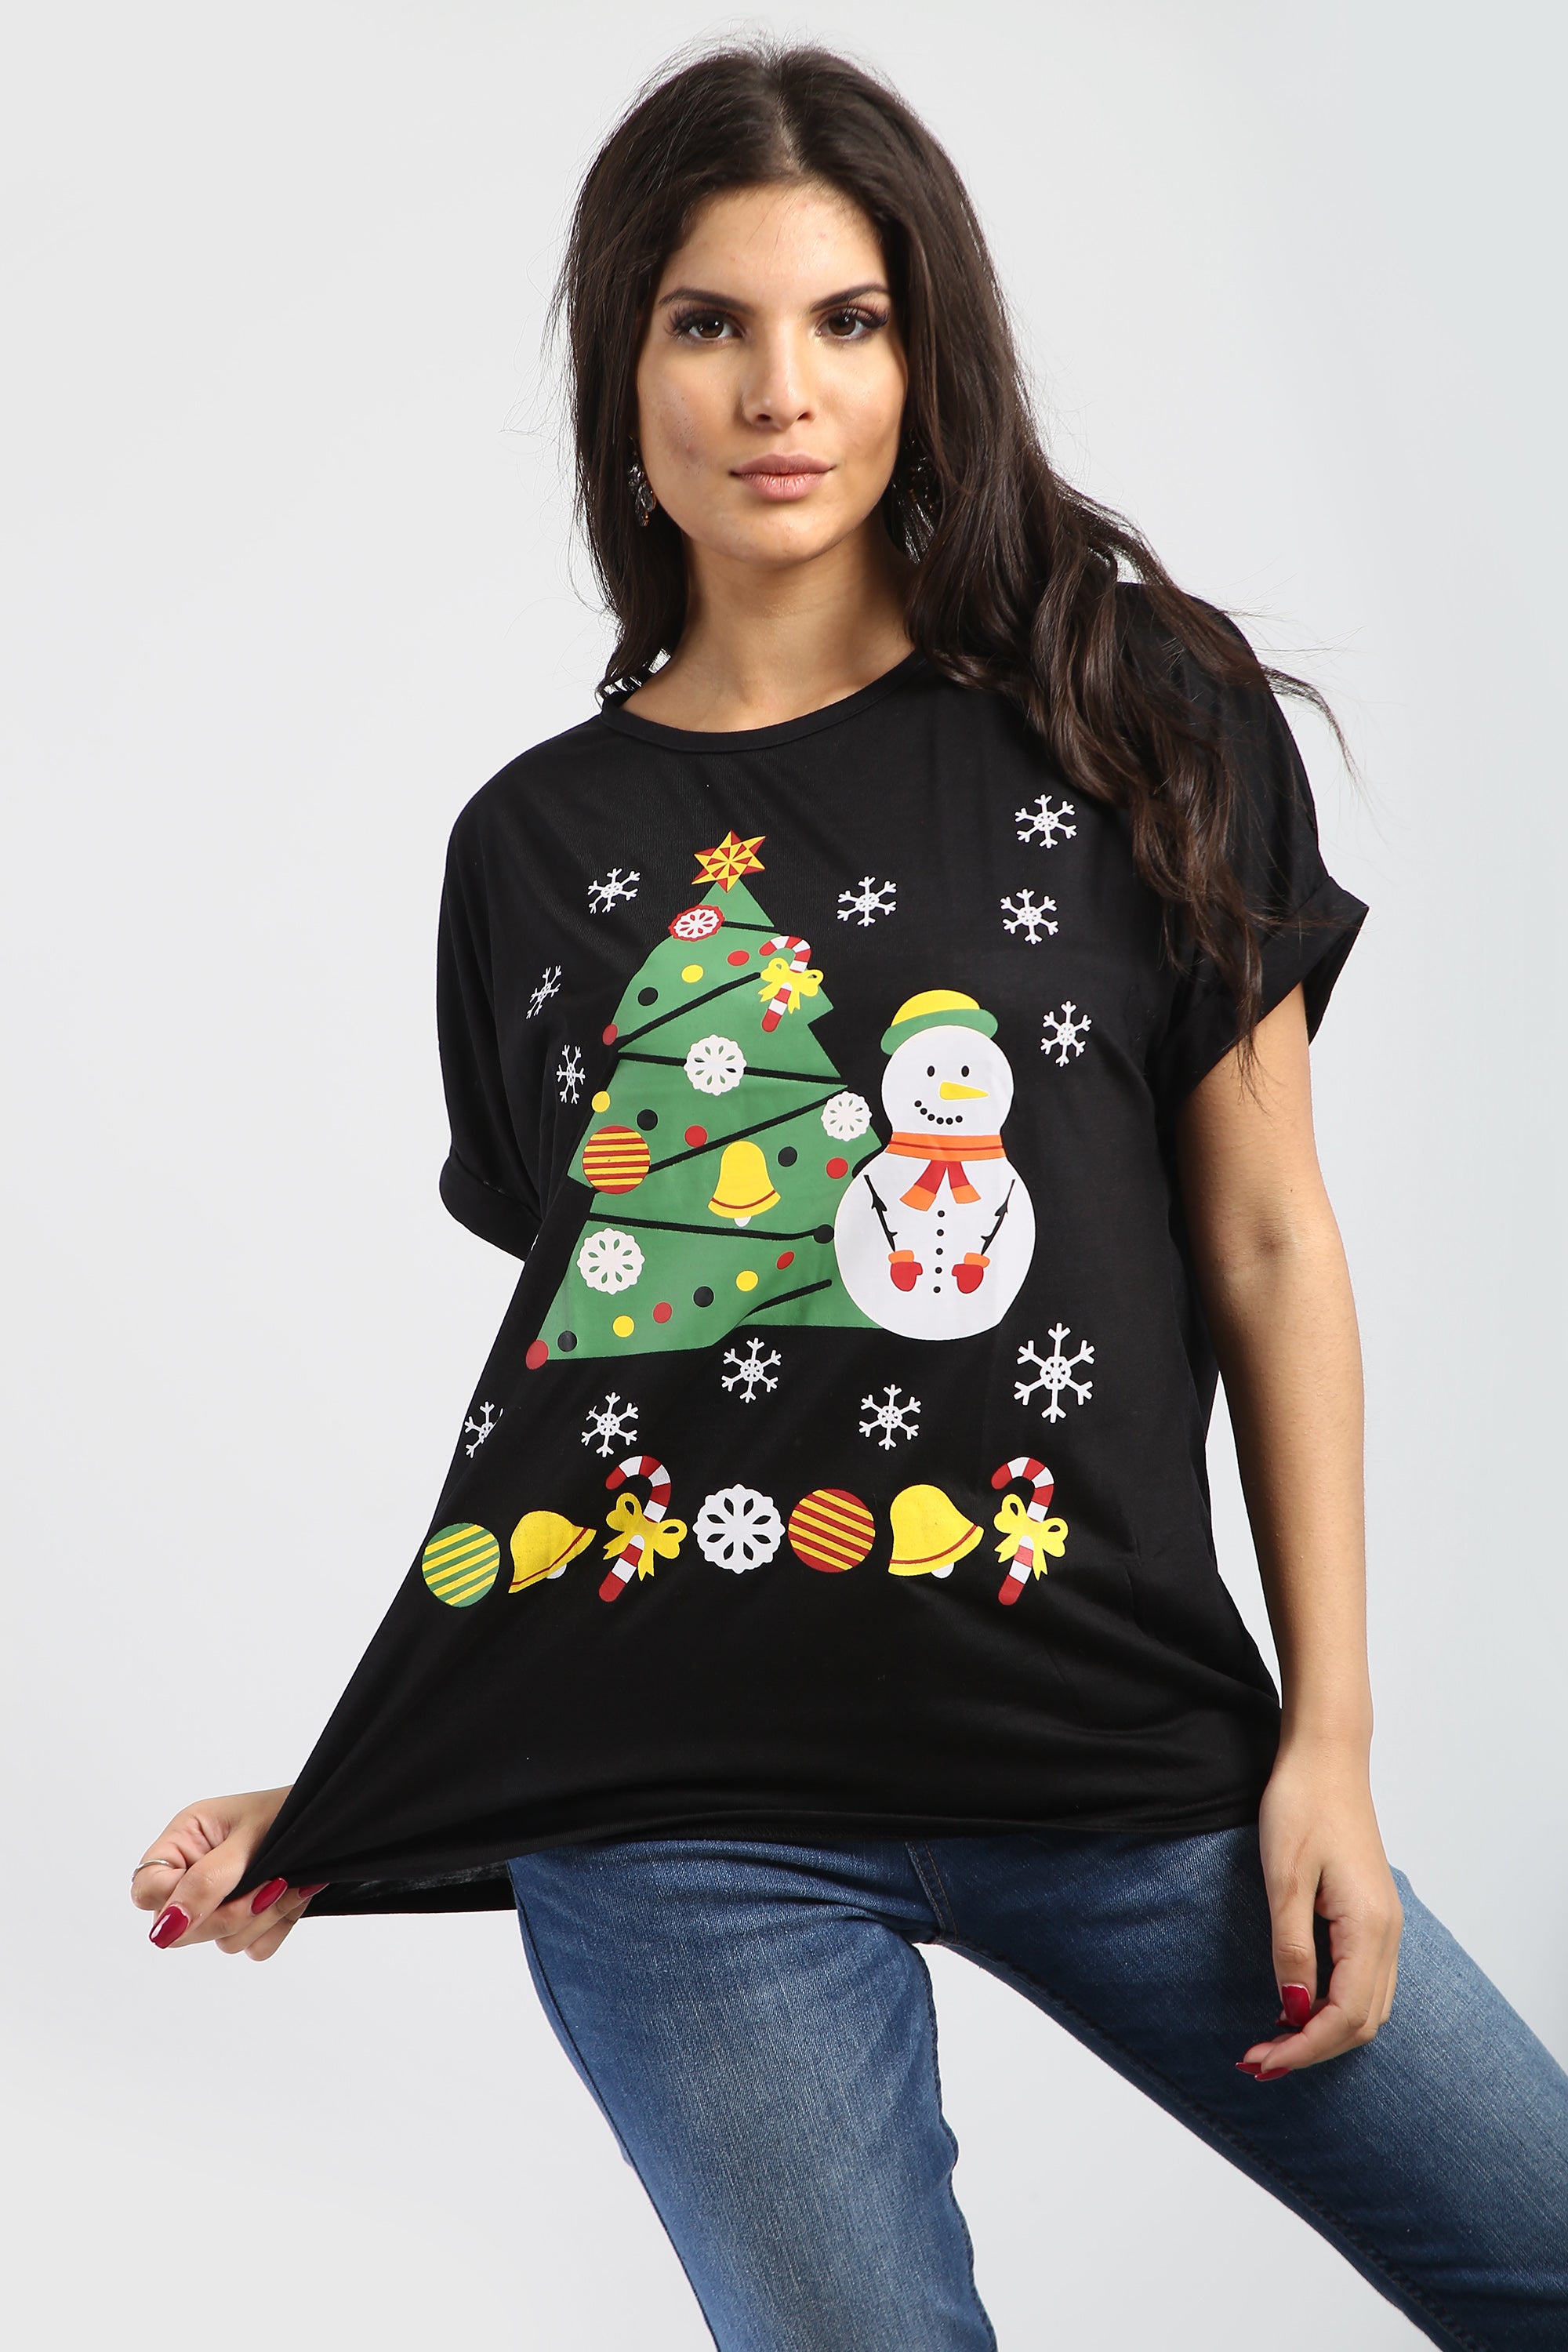 Sarah Christmas Baggy T Shirt Top